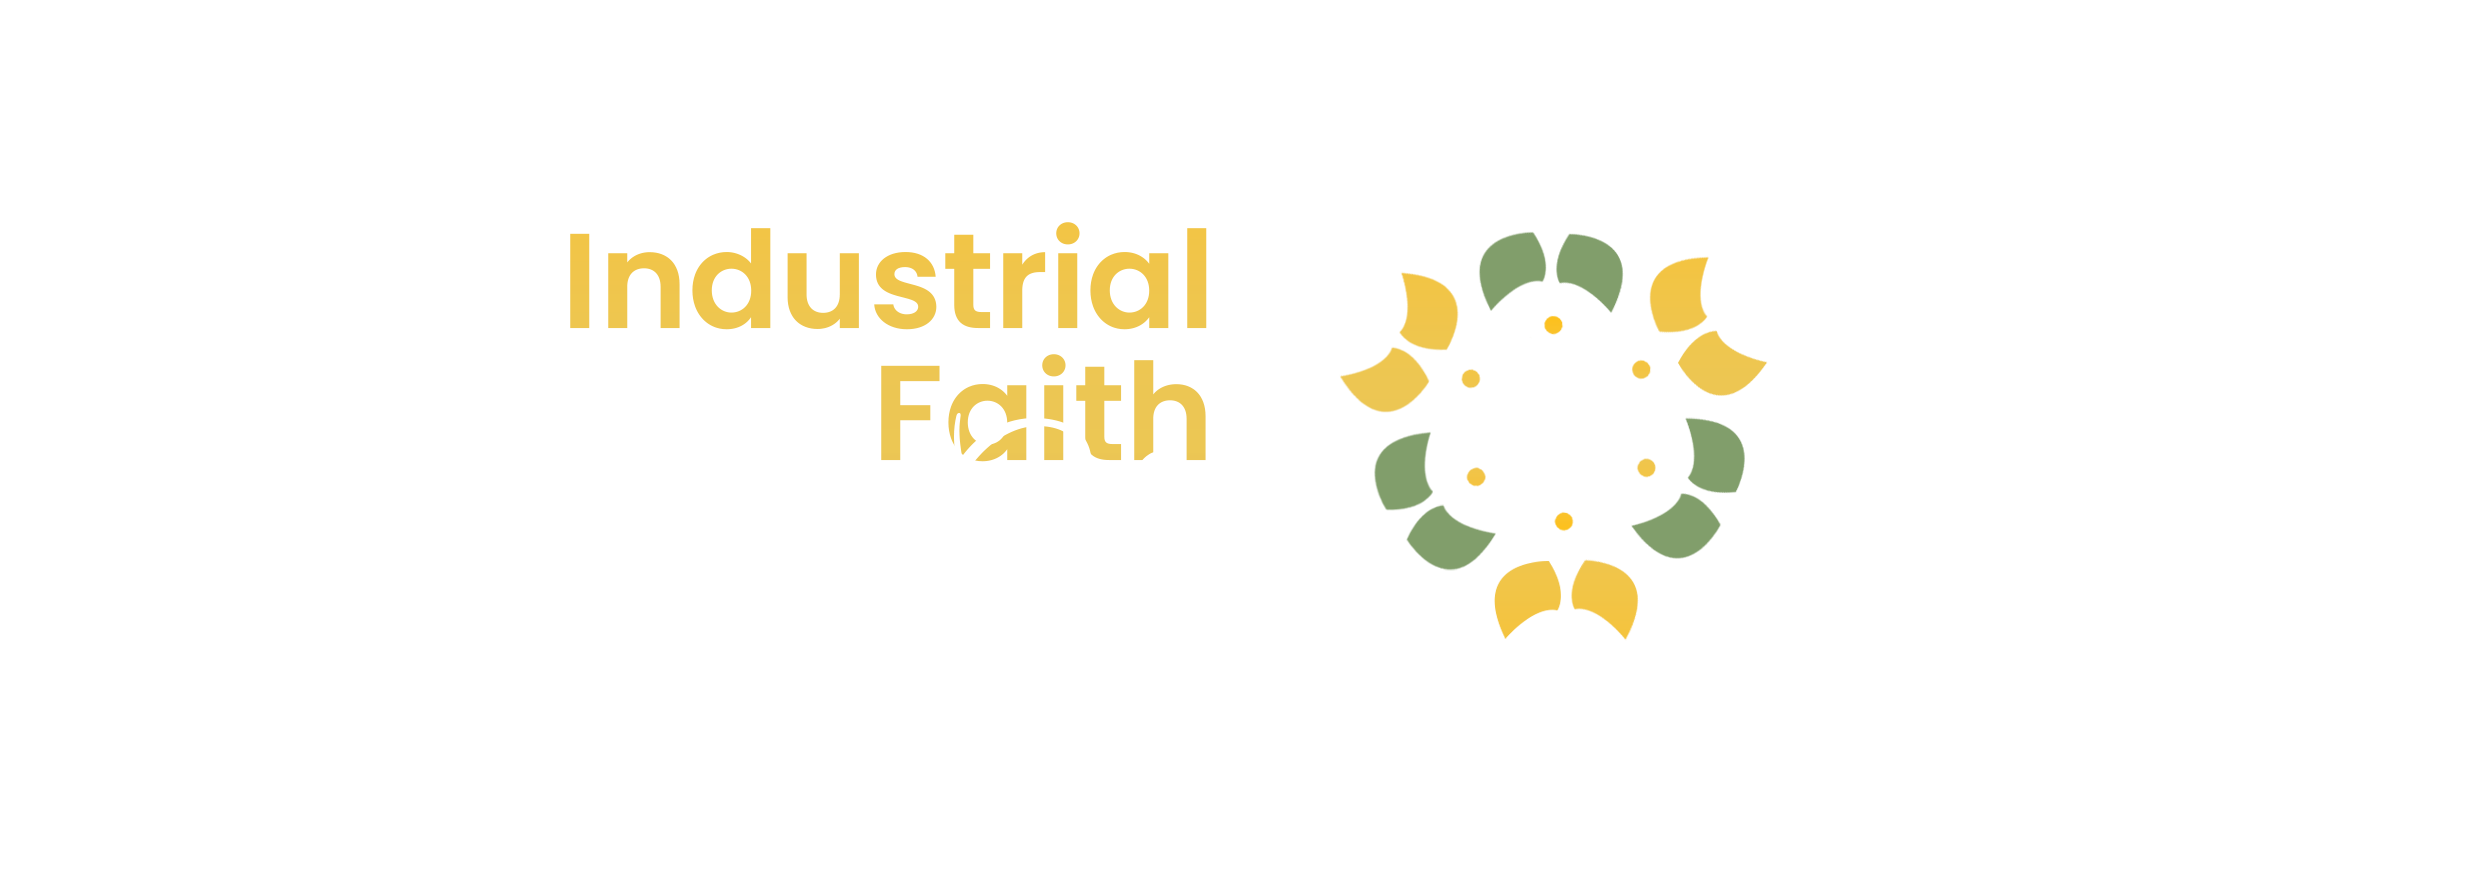 Industrial Faith City